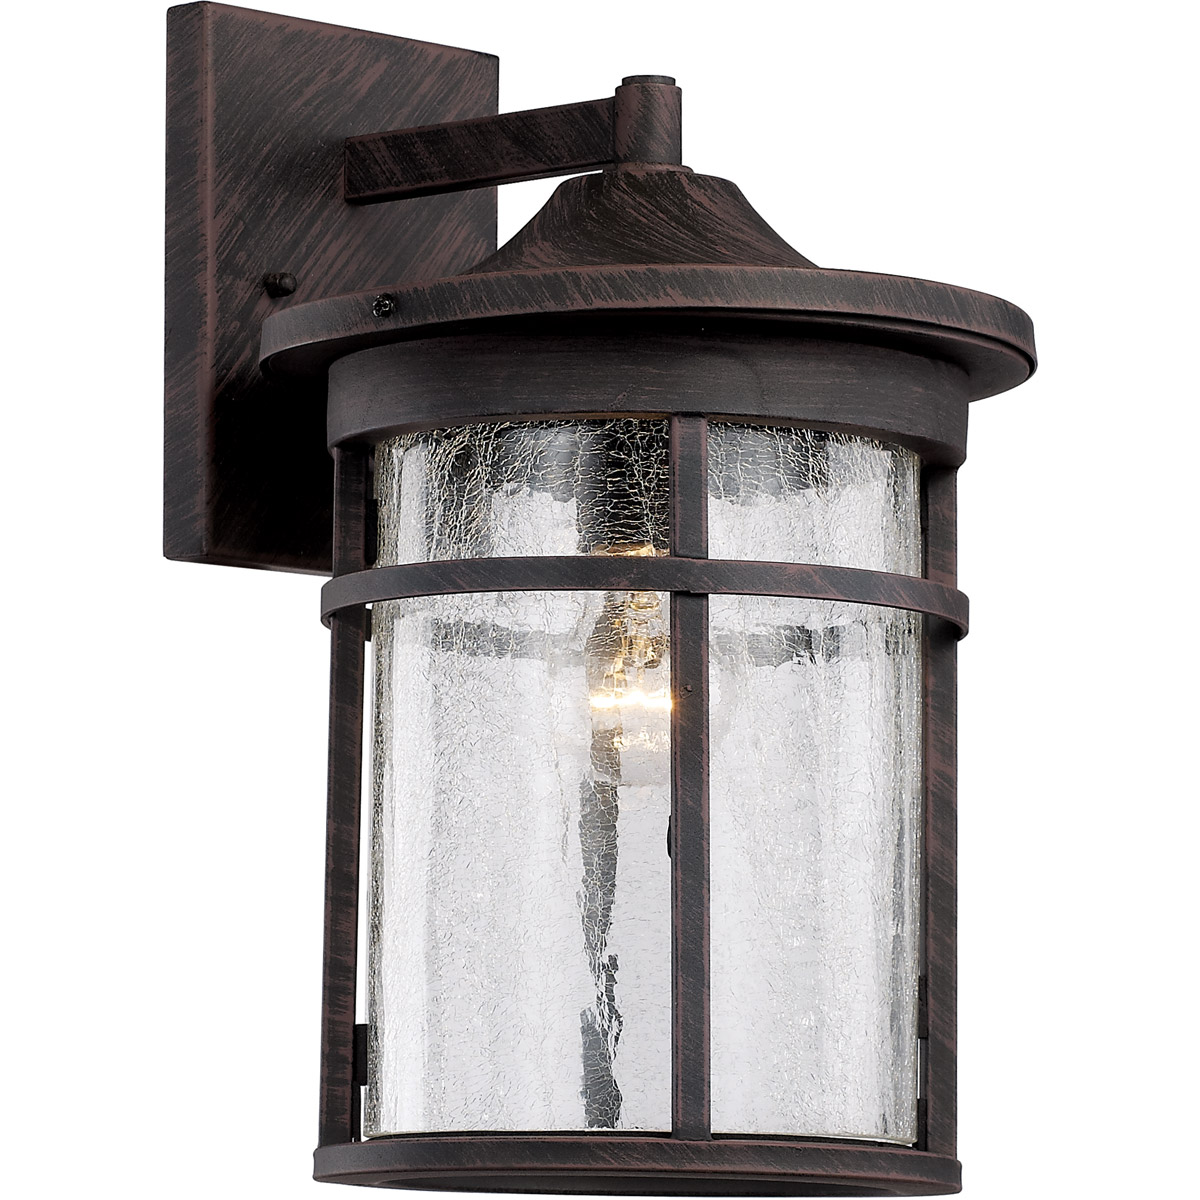 Trans Globe Lighting 1 Light Outdoor Antique Wall Lantern 173599, Solar & Outdoor Lighting